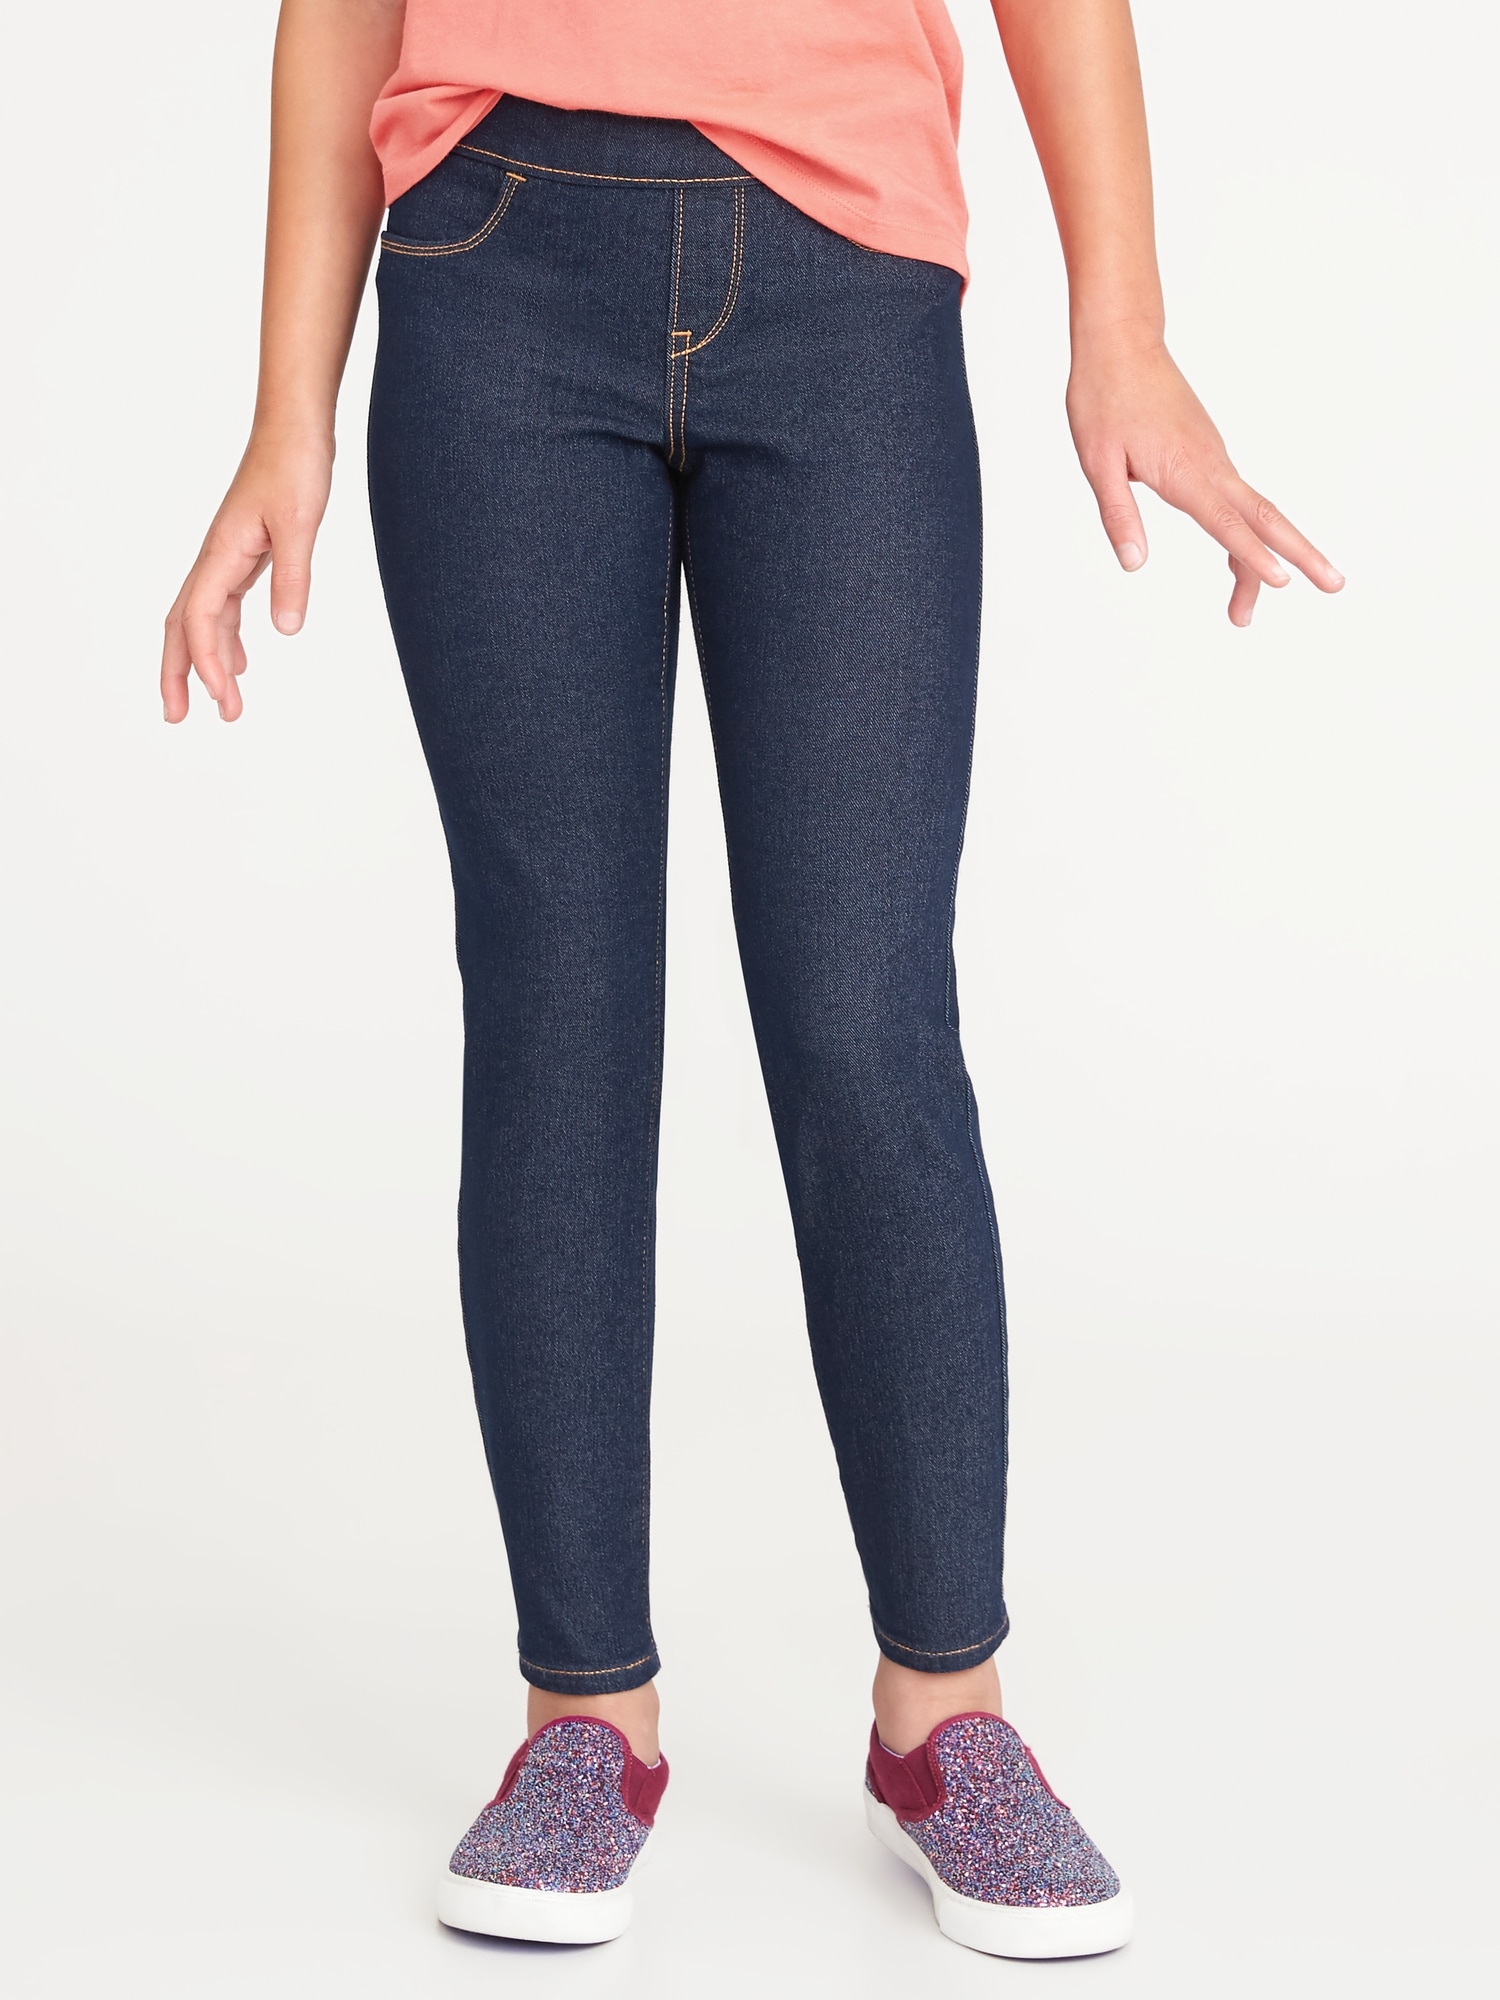 jeans for skinny girls